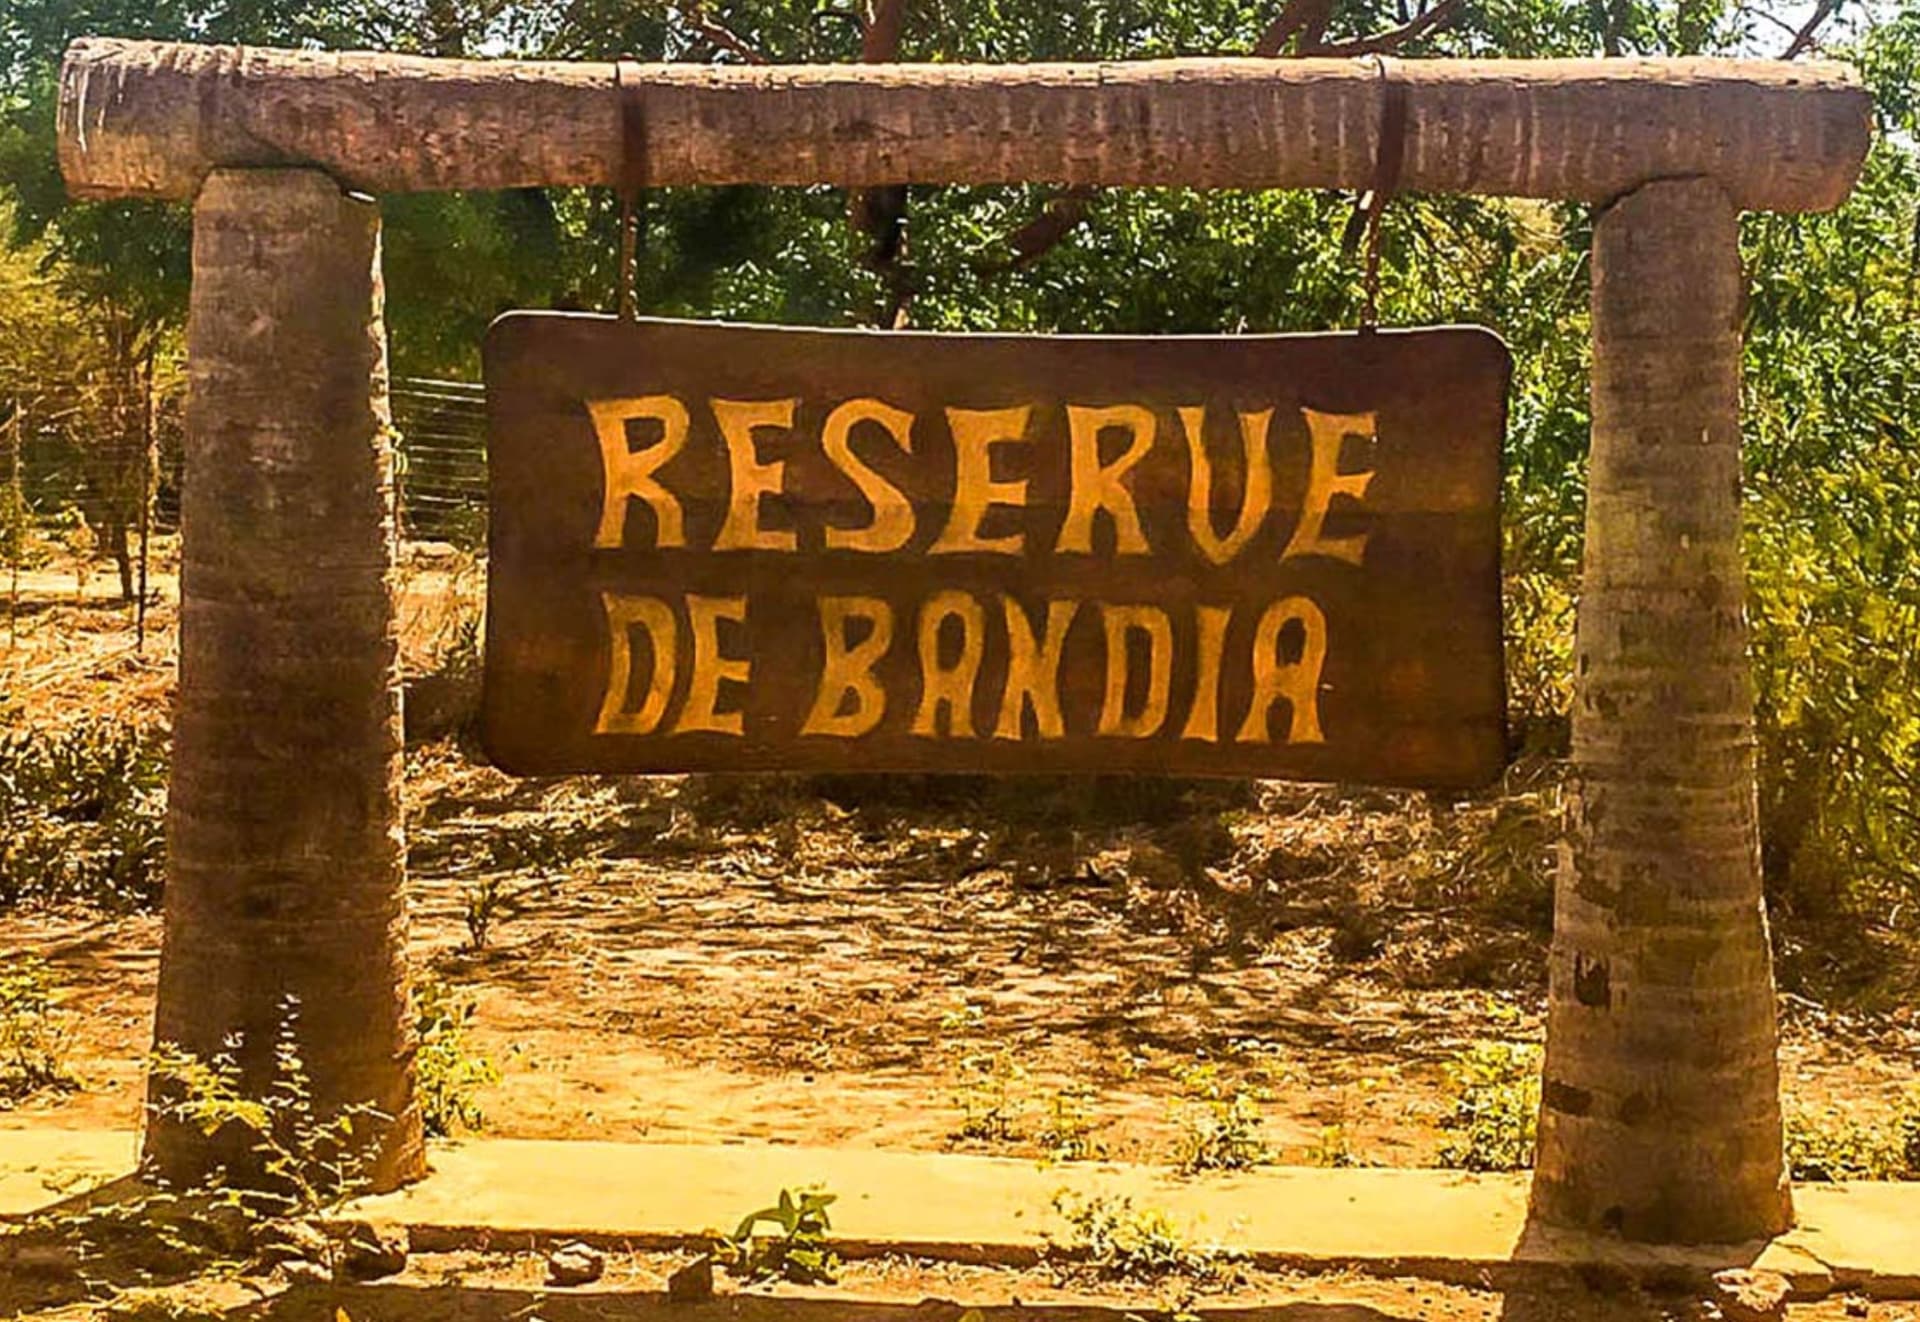 Reserve de Bandia